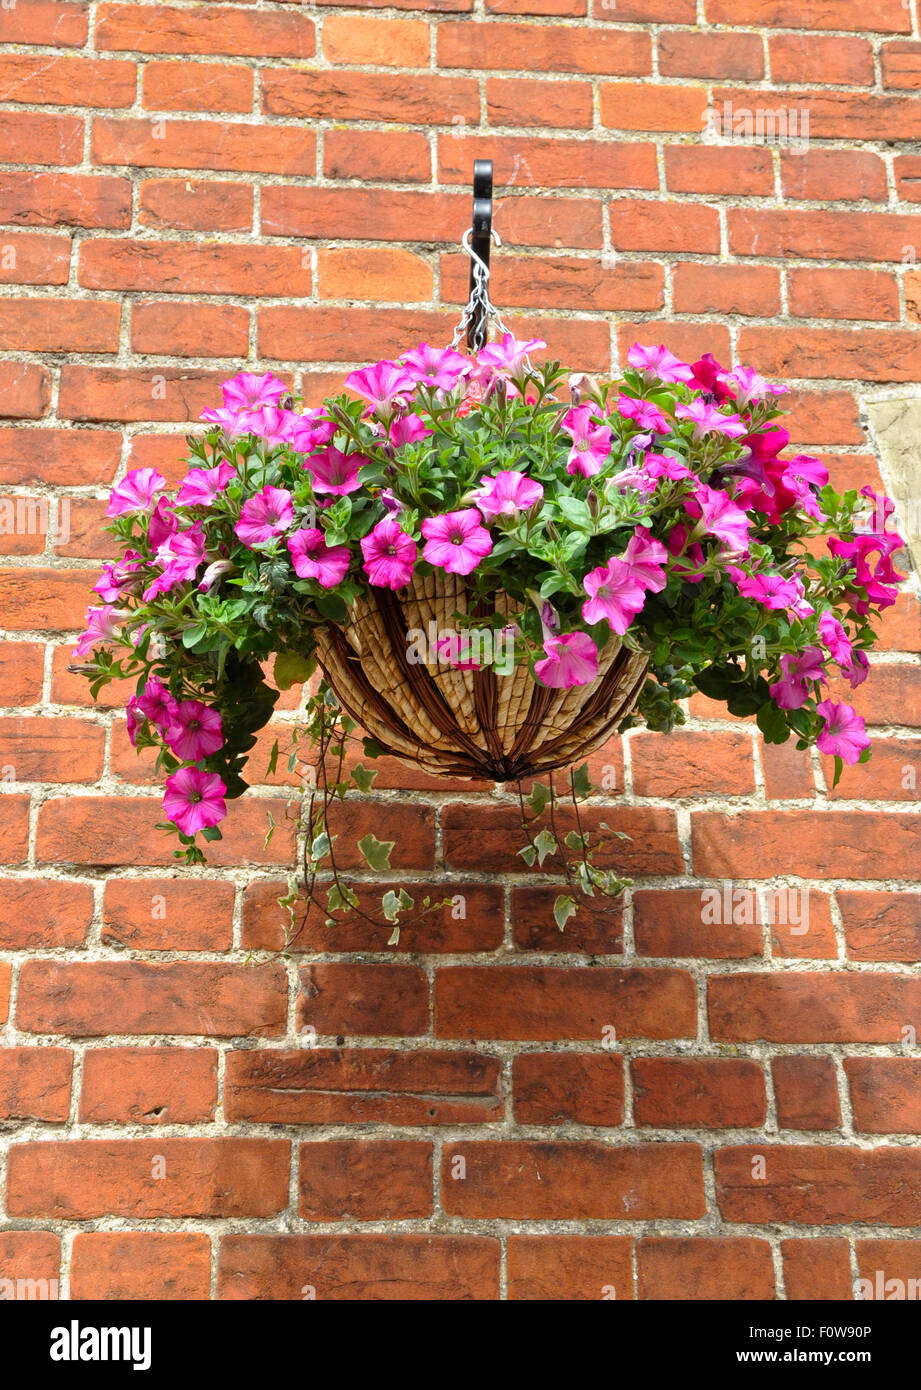 petunias in hanging basket Stock Photo